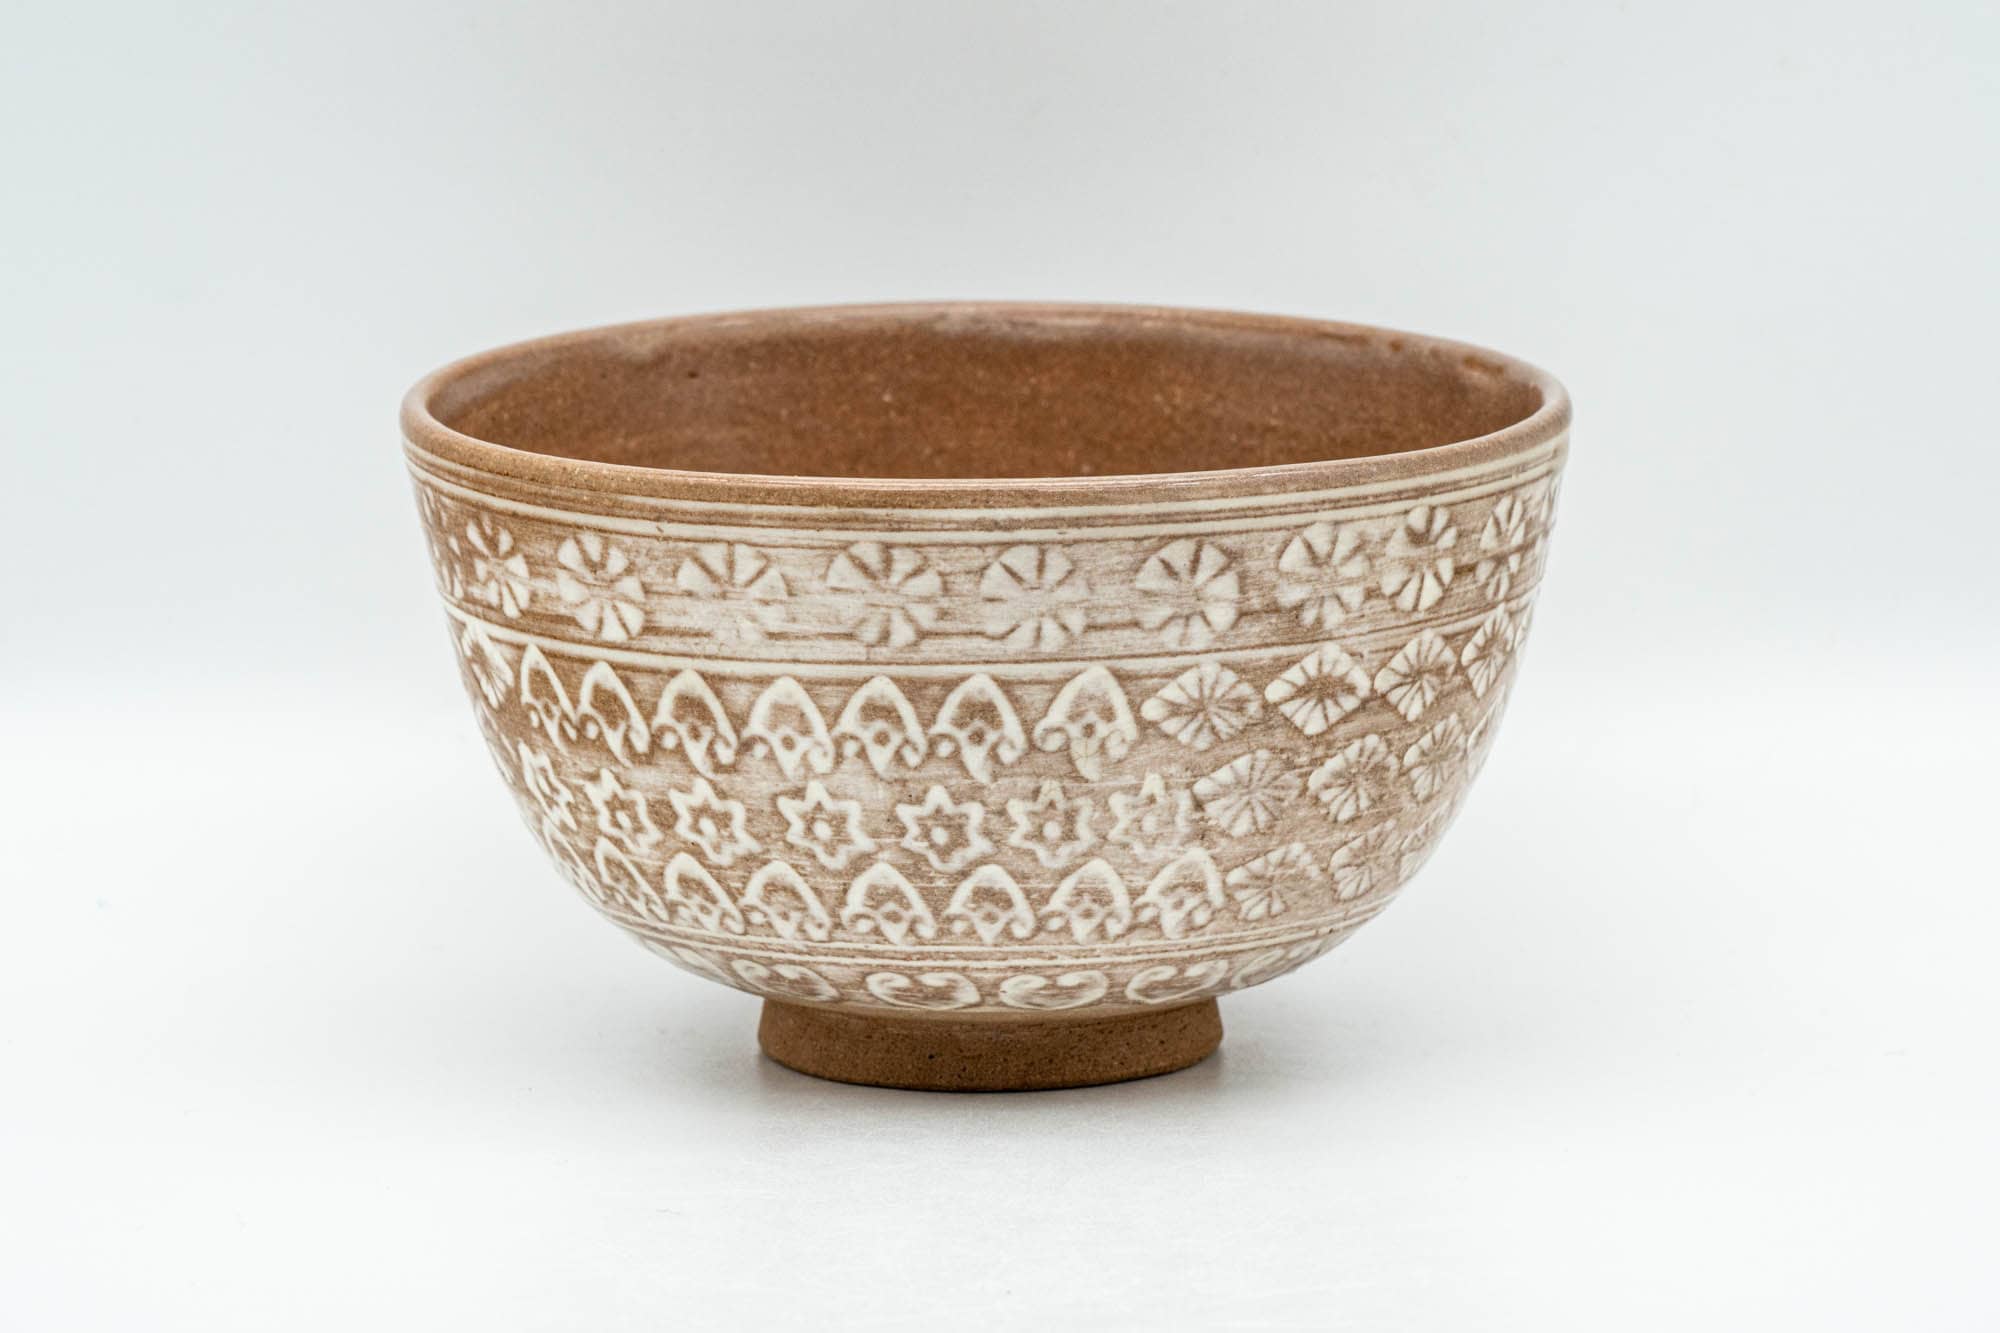 Japanese Matcha Bowl - Floral Geometric White Glazed Chawan - 300ml - Tezumi